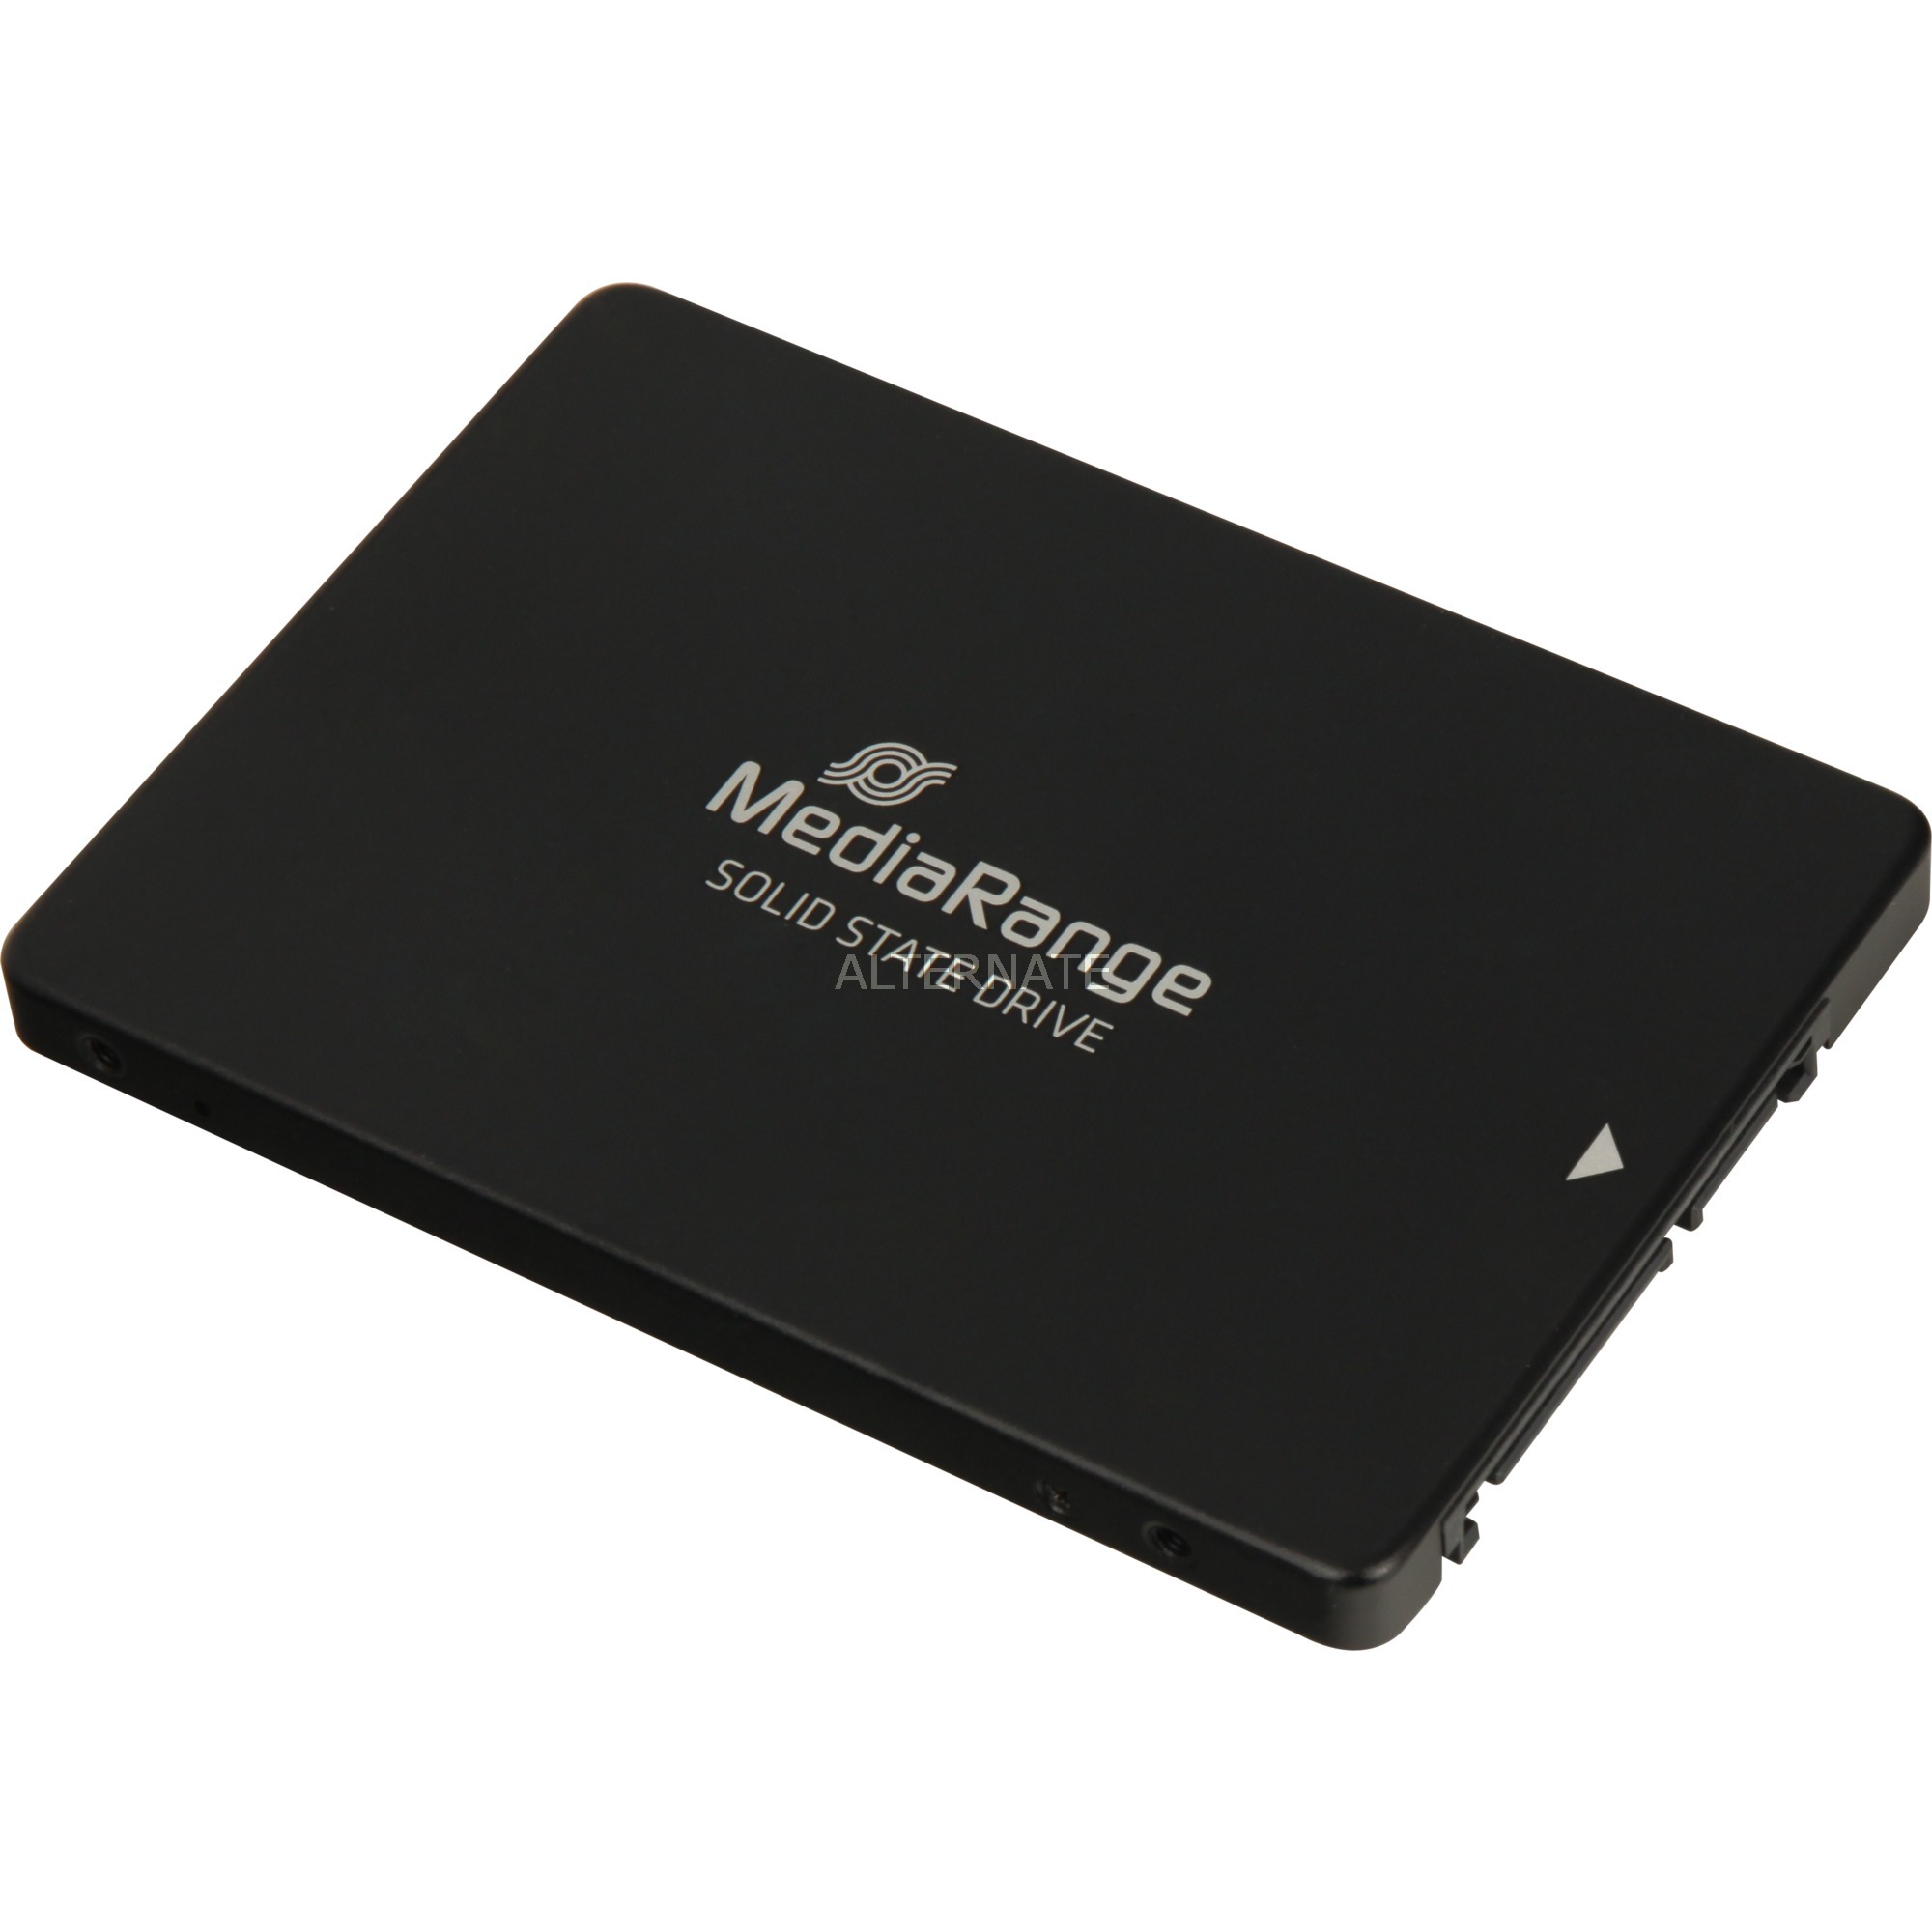 Image of Alternate - MR1001 120 GB, SSD online einkaufen bei Alternate